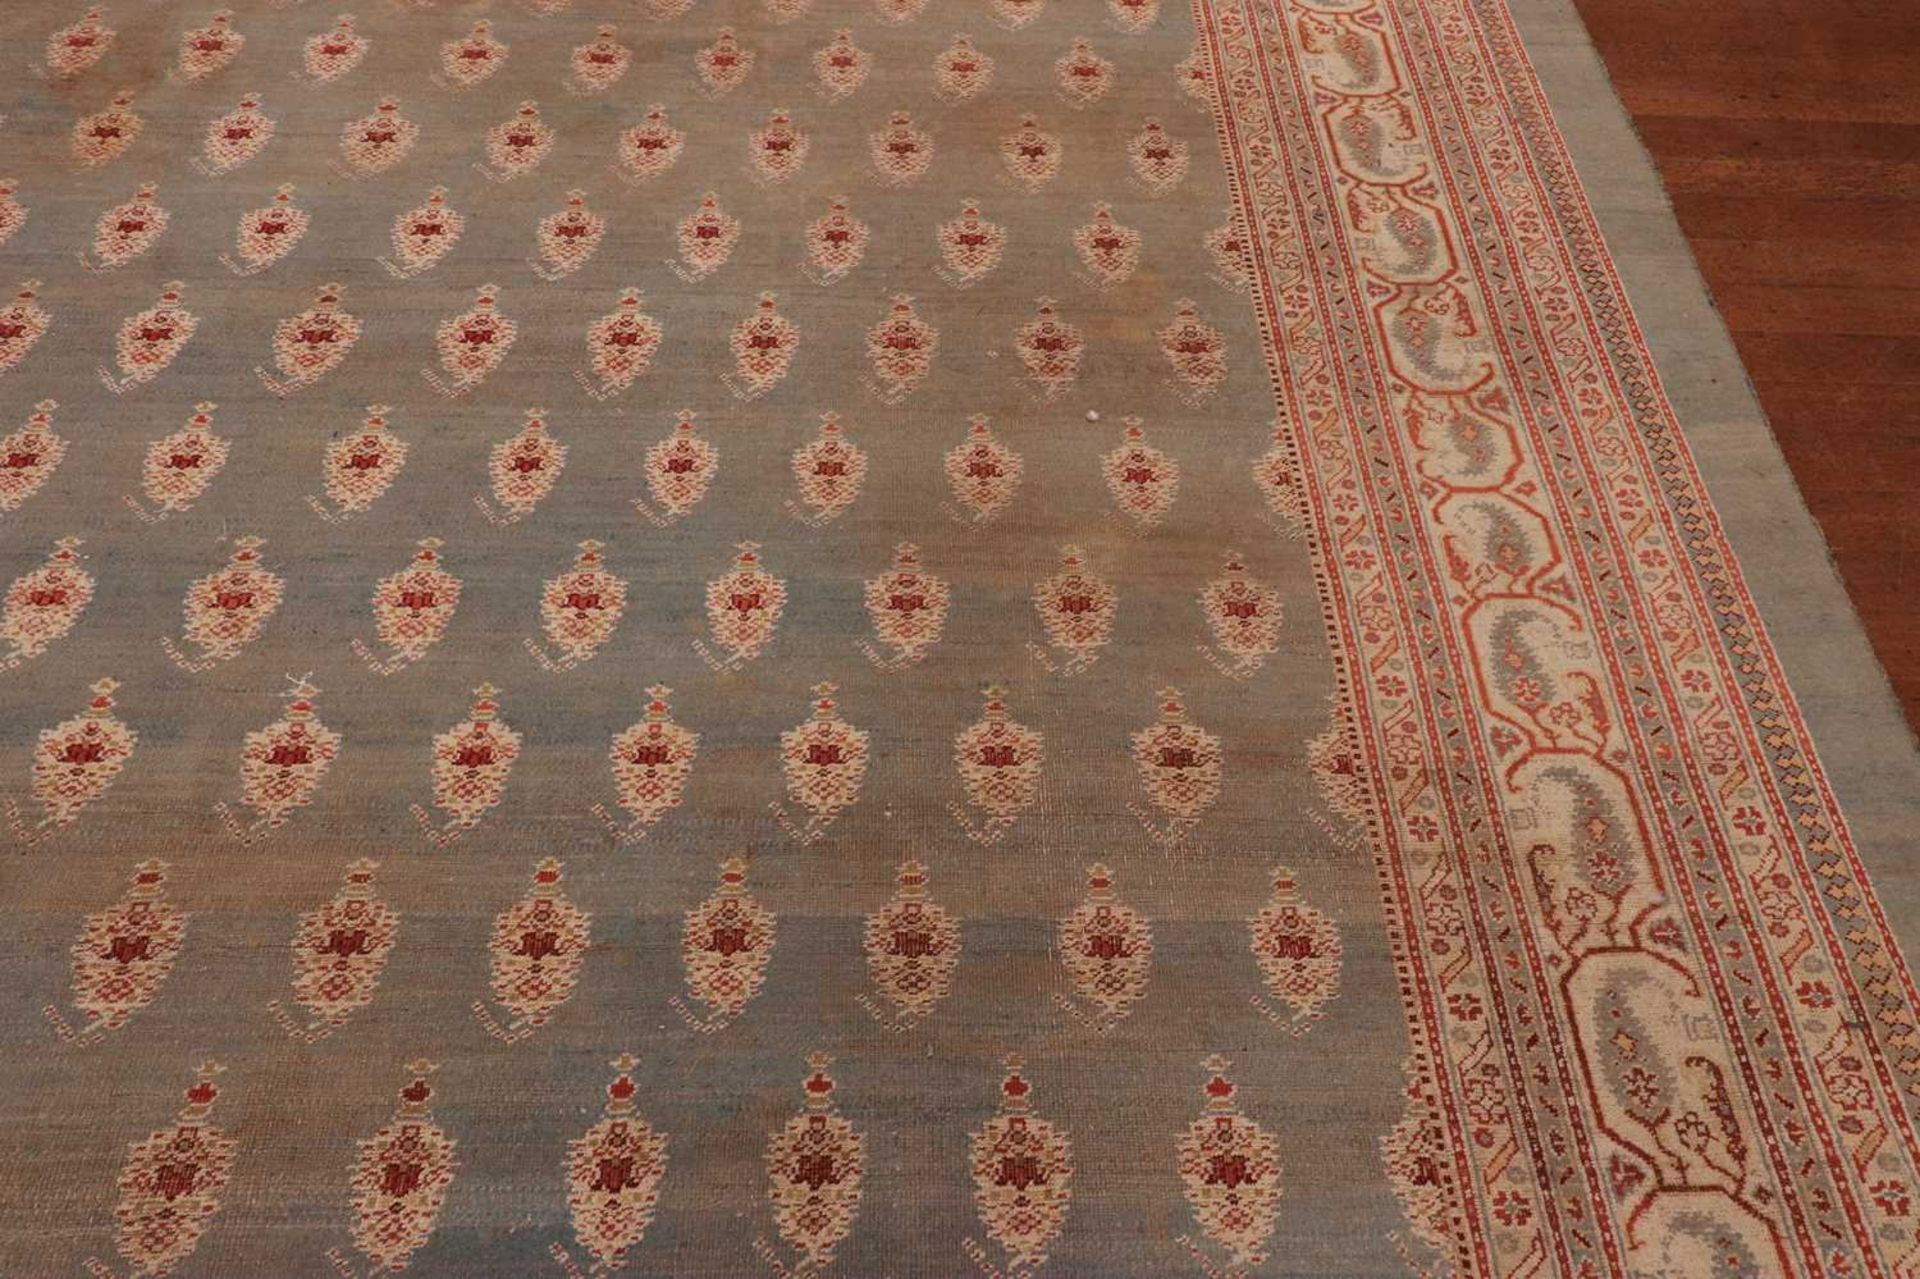 ☘ A large blue Amritsar carpet, - Image 20 of 38